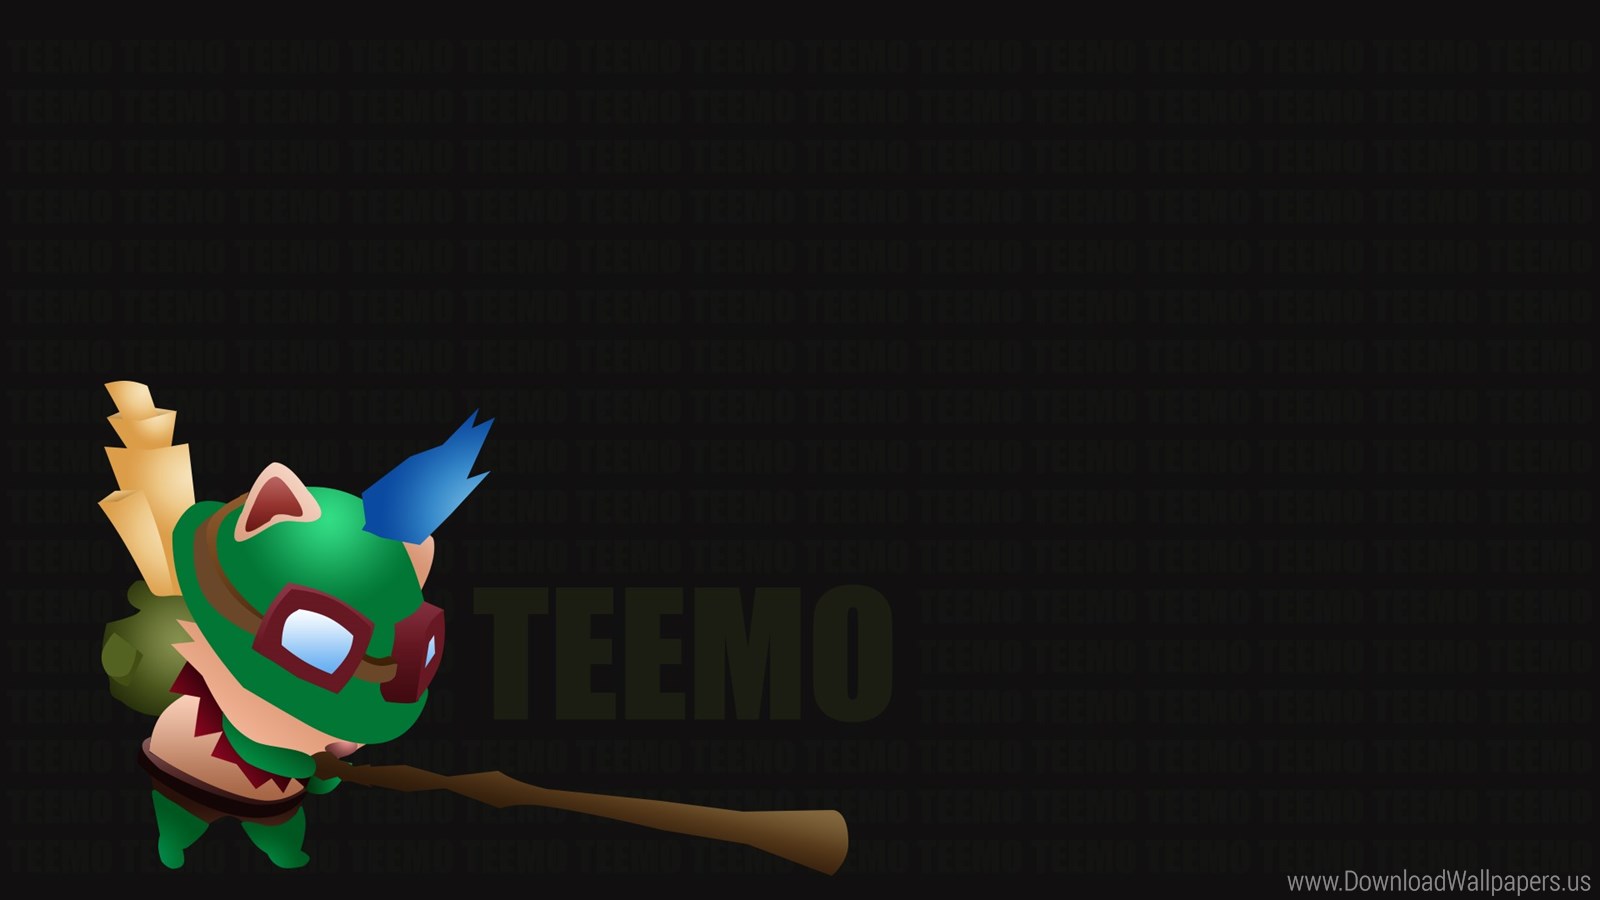 Teemo Vector , HD Wallpaper & Backgrounds